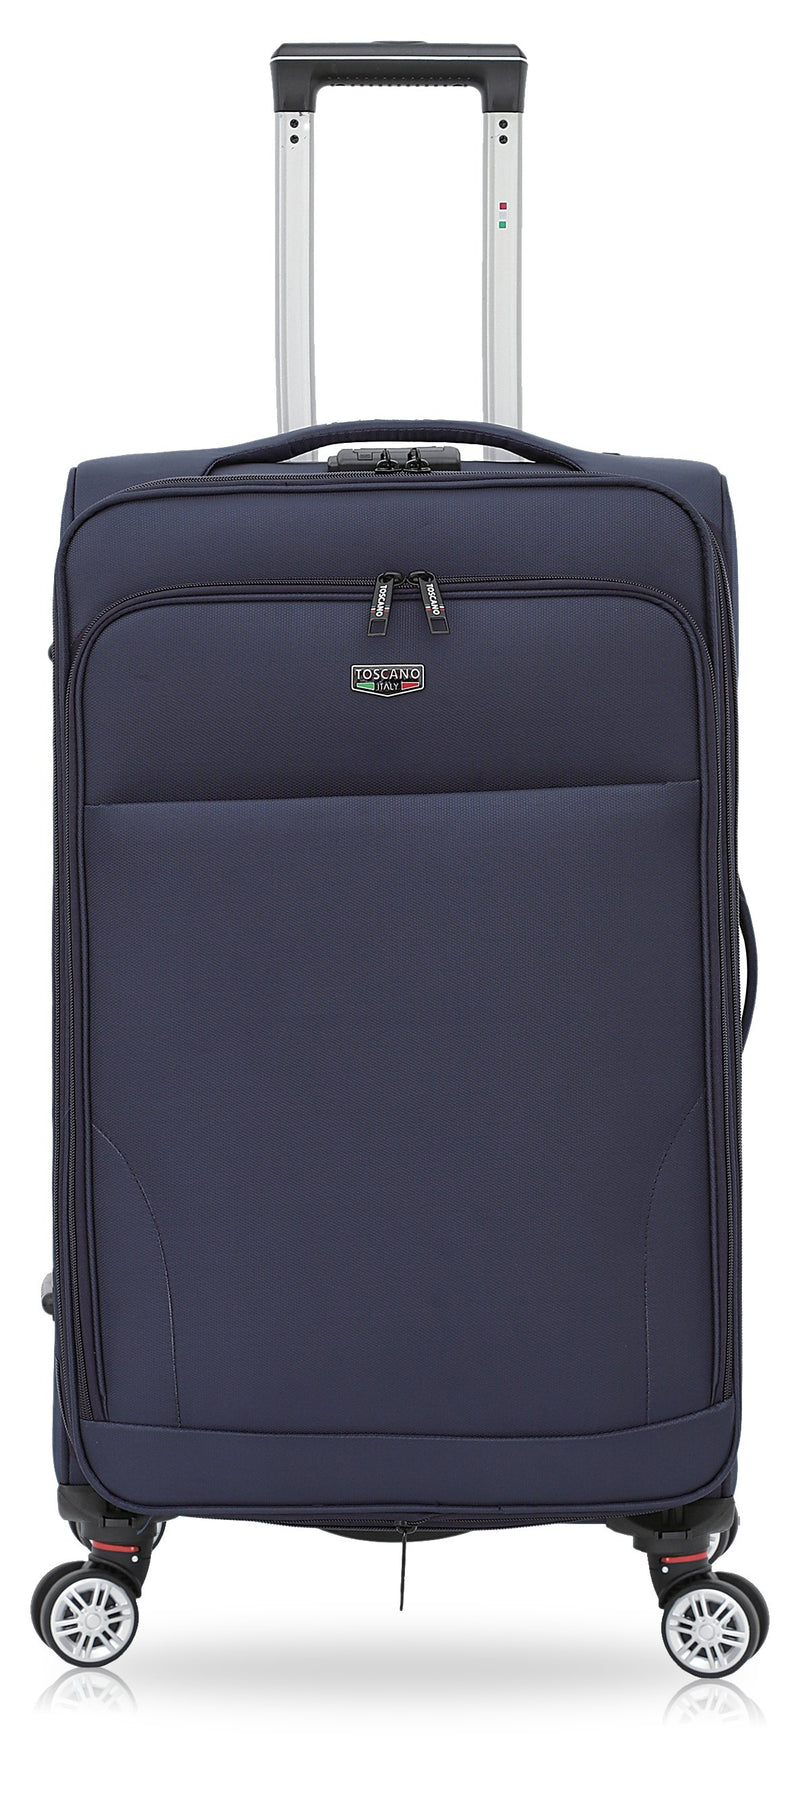 TOSCANO 32-inch Ricerca Large Luggage Suitcase